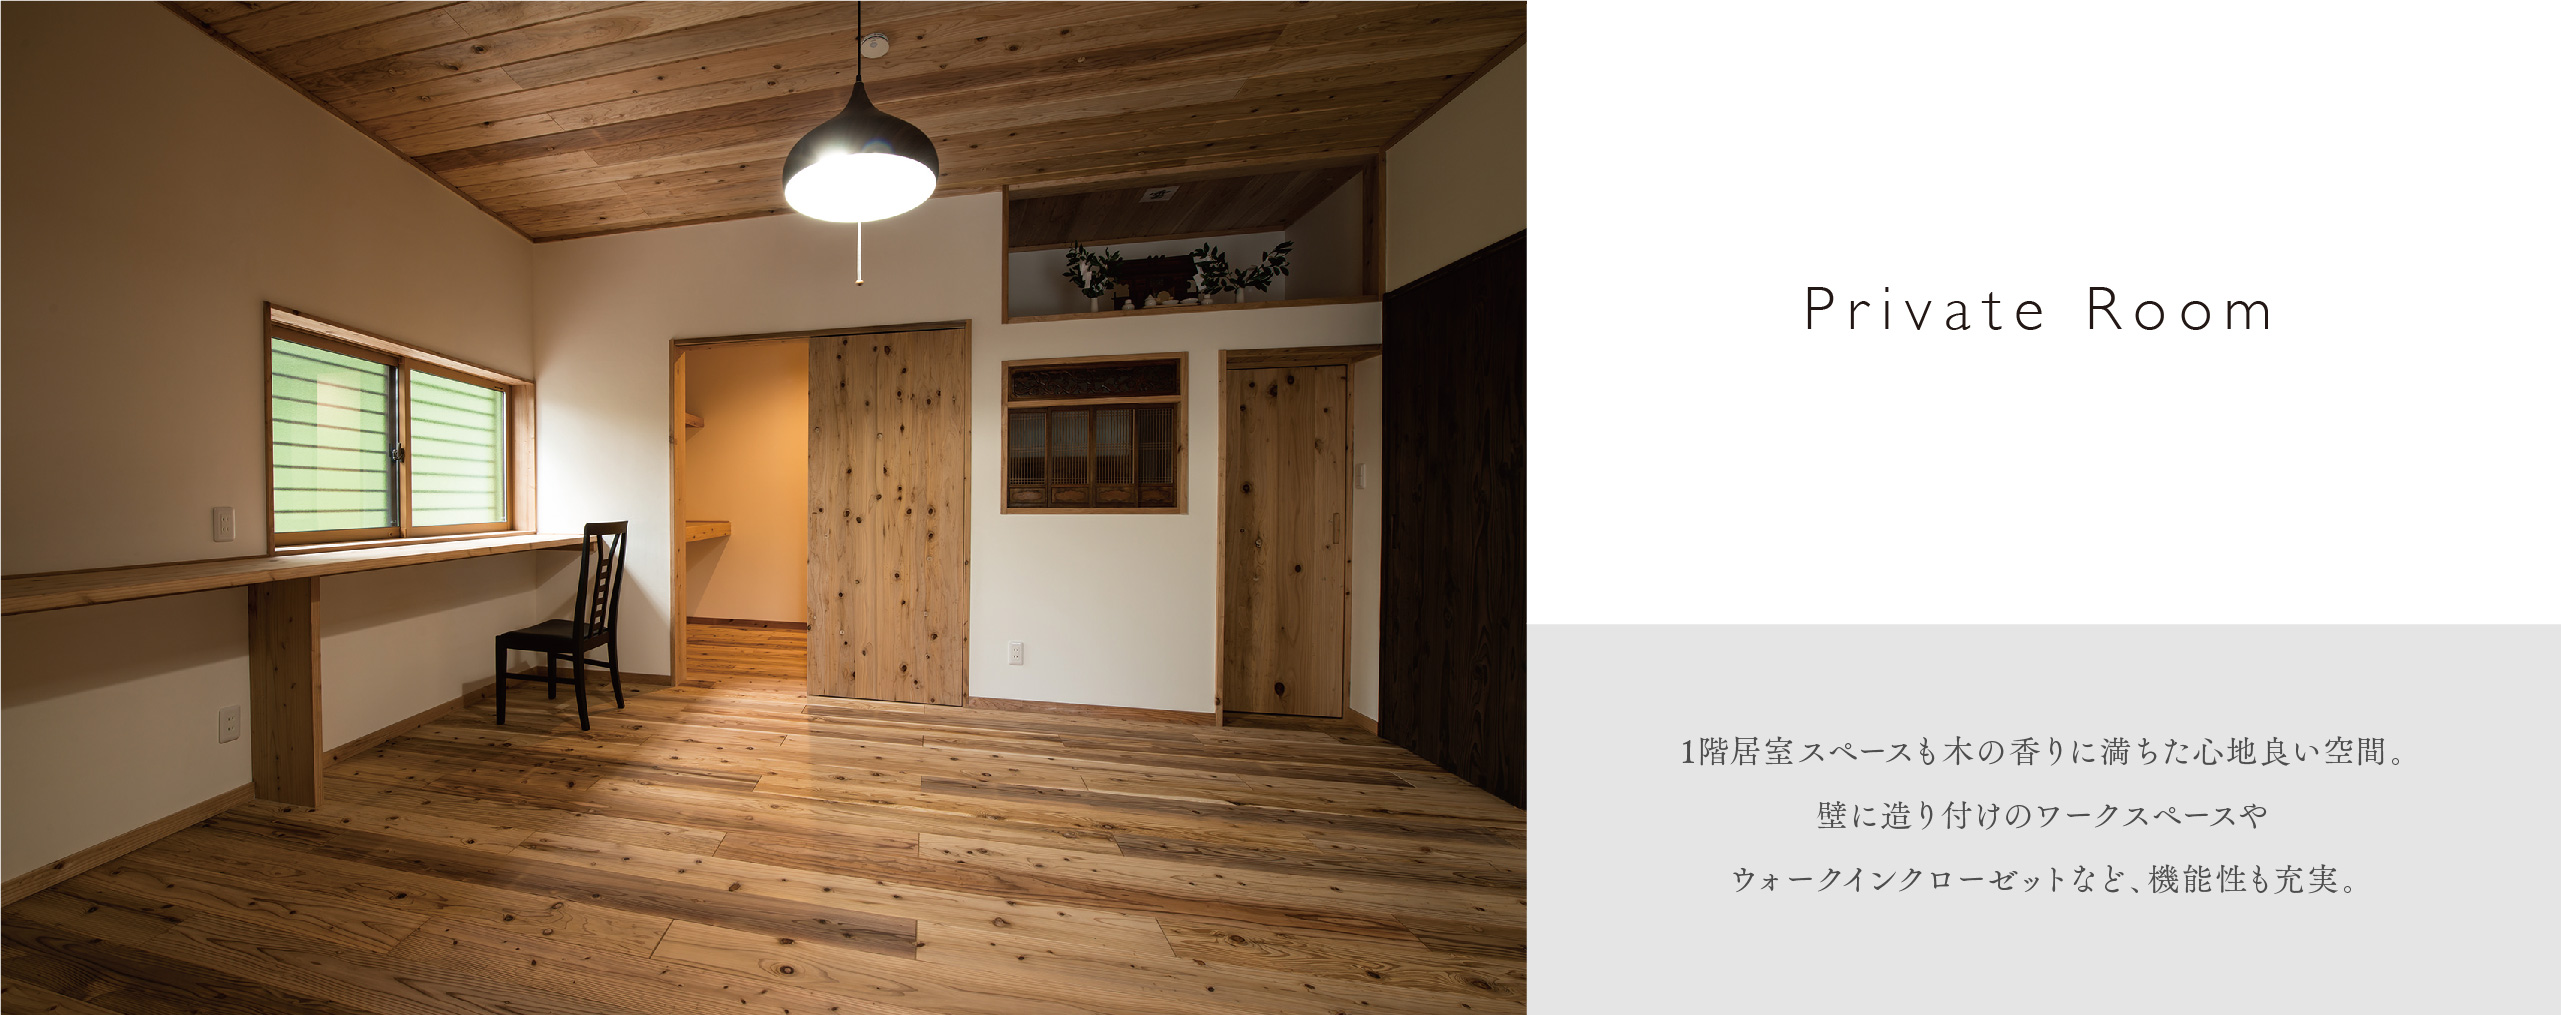 Private Room 1階居室スペースも木の香りに満ちた心地良い空間。<br>壁に造り付けのワークスペースや<br>ウォークインクローゼットなど、機能性も充実。